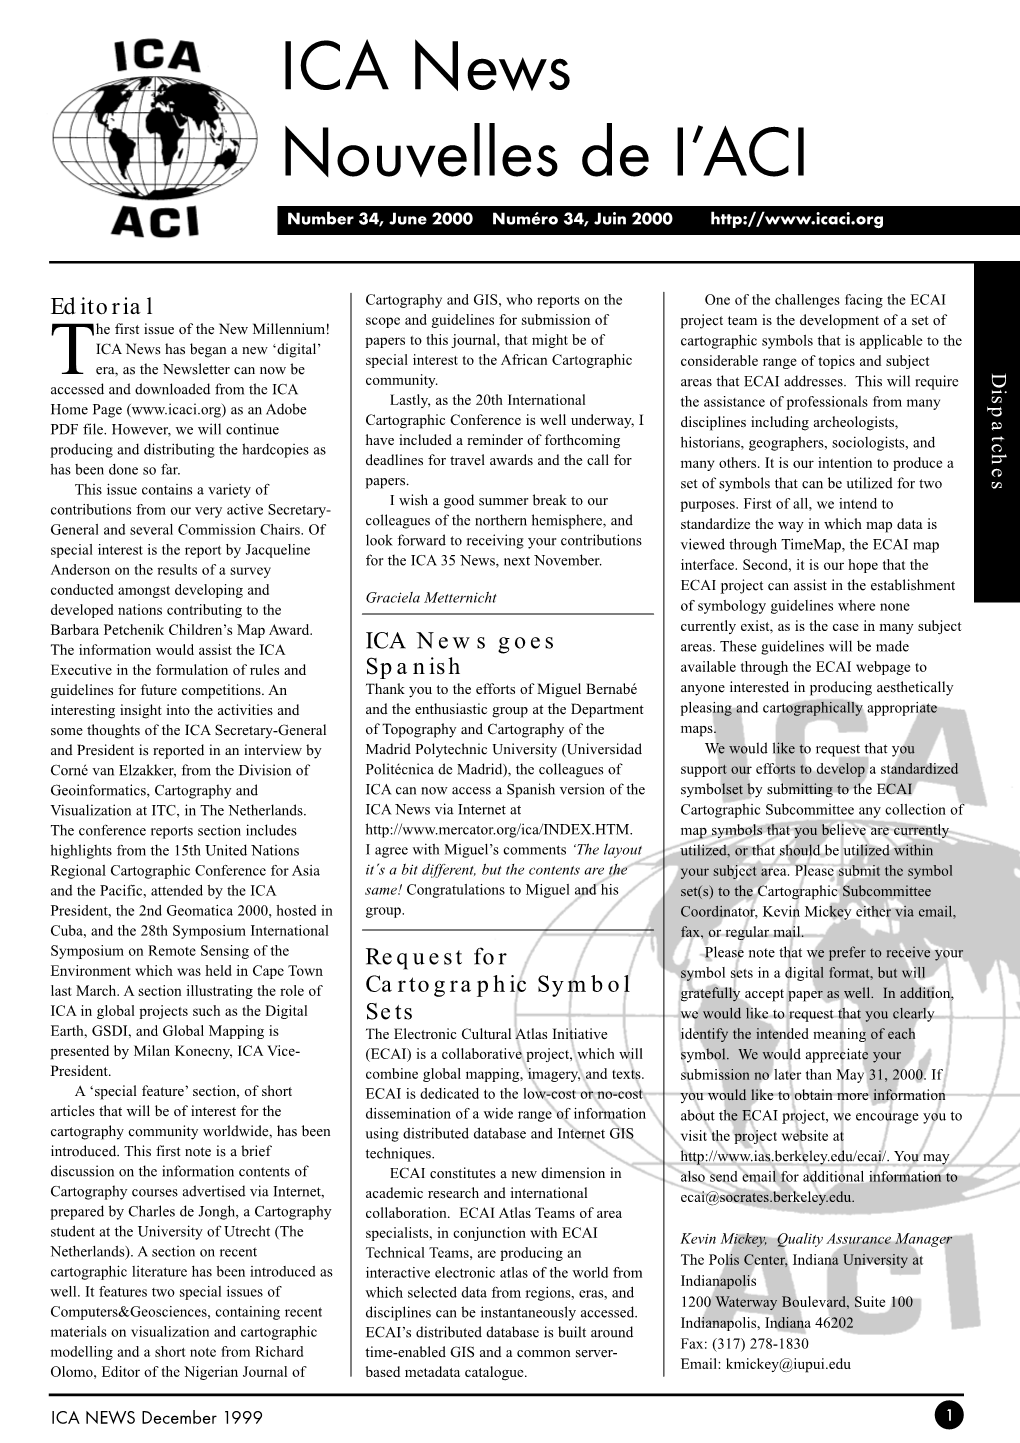 ICA News Nouvelles De I'aci